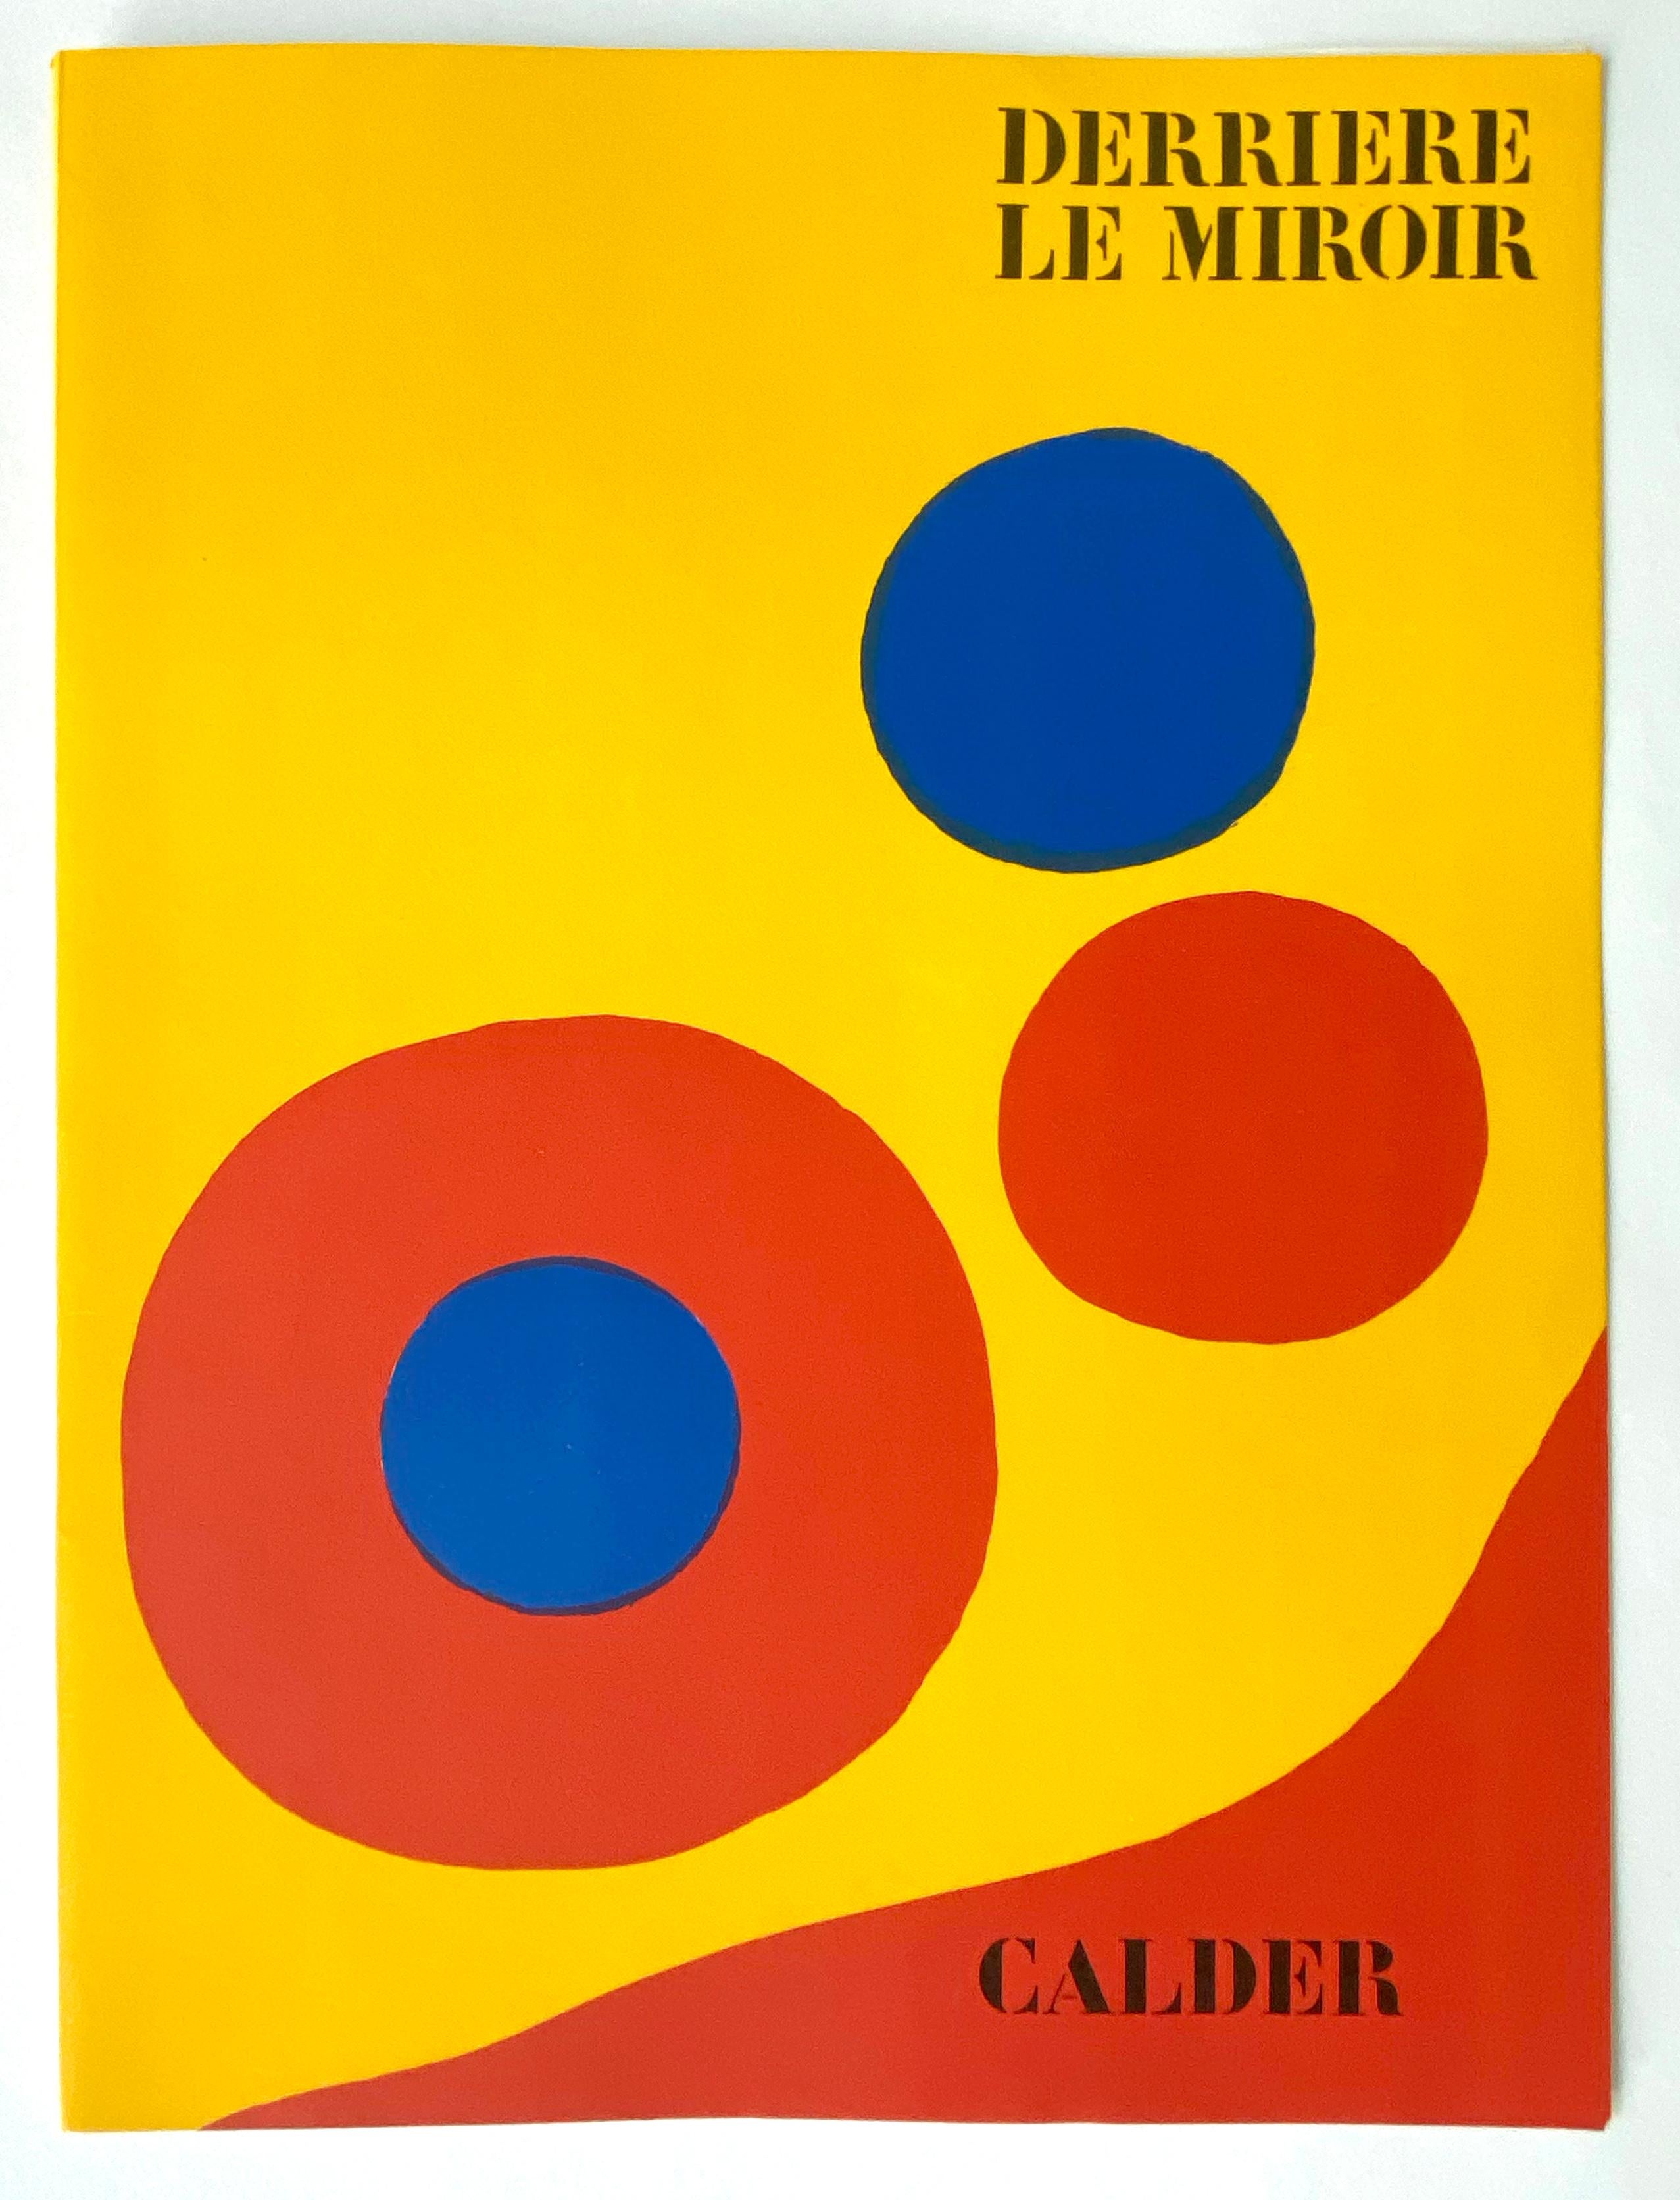 Derriere Le Miroir No. 201, Cover - Print by Alexander Calder